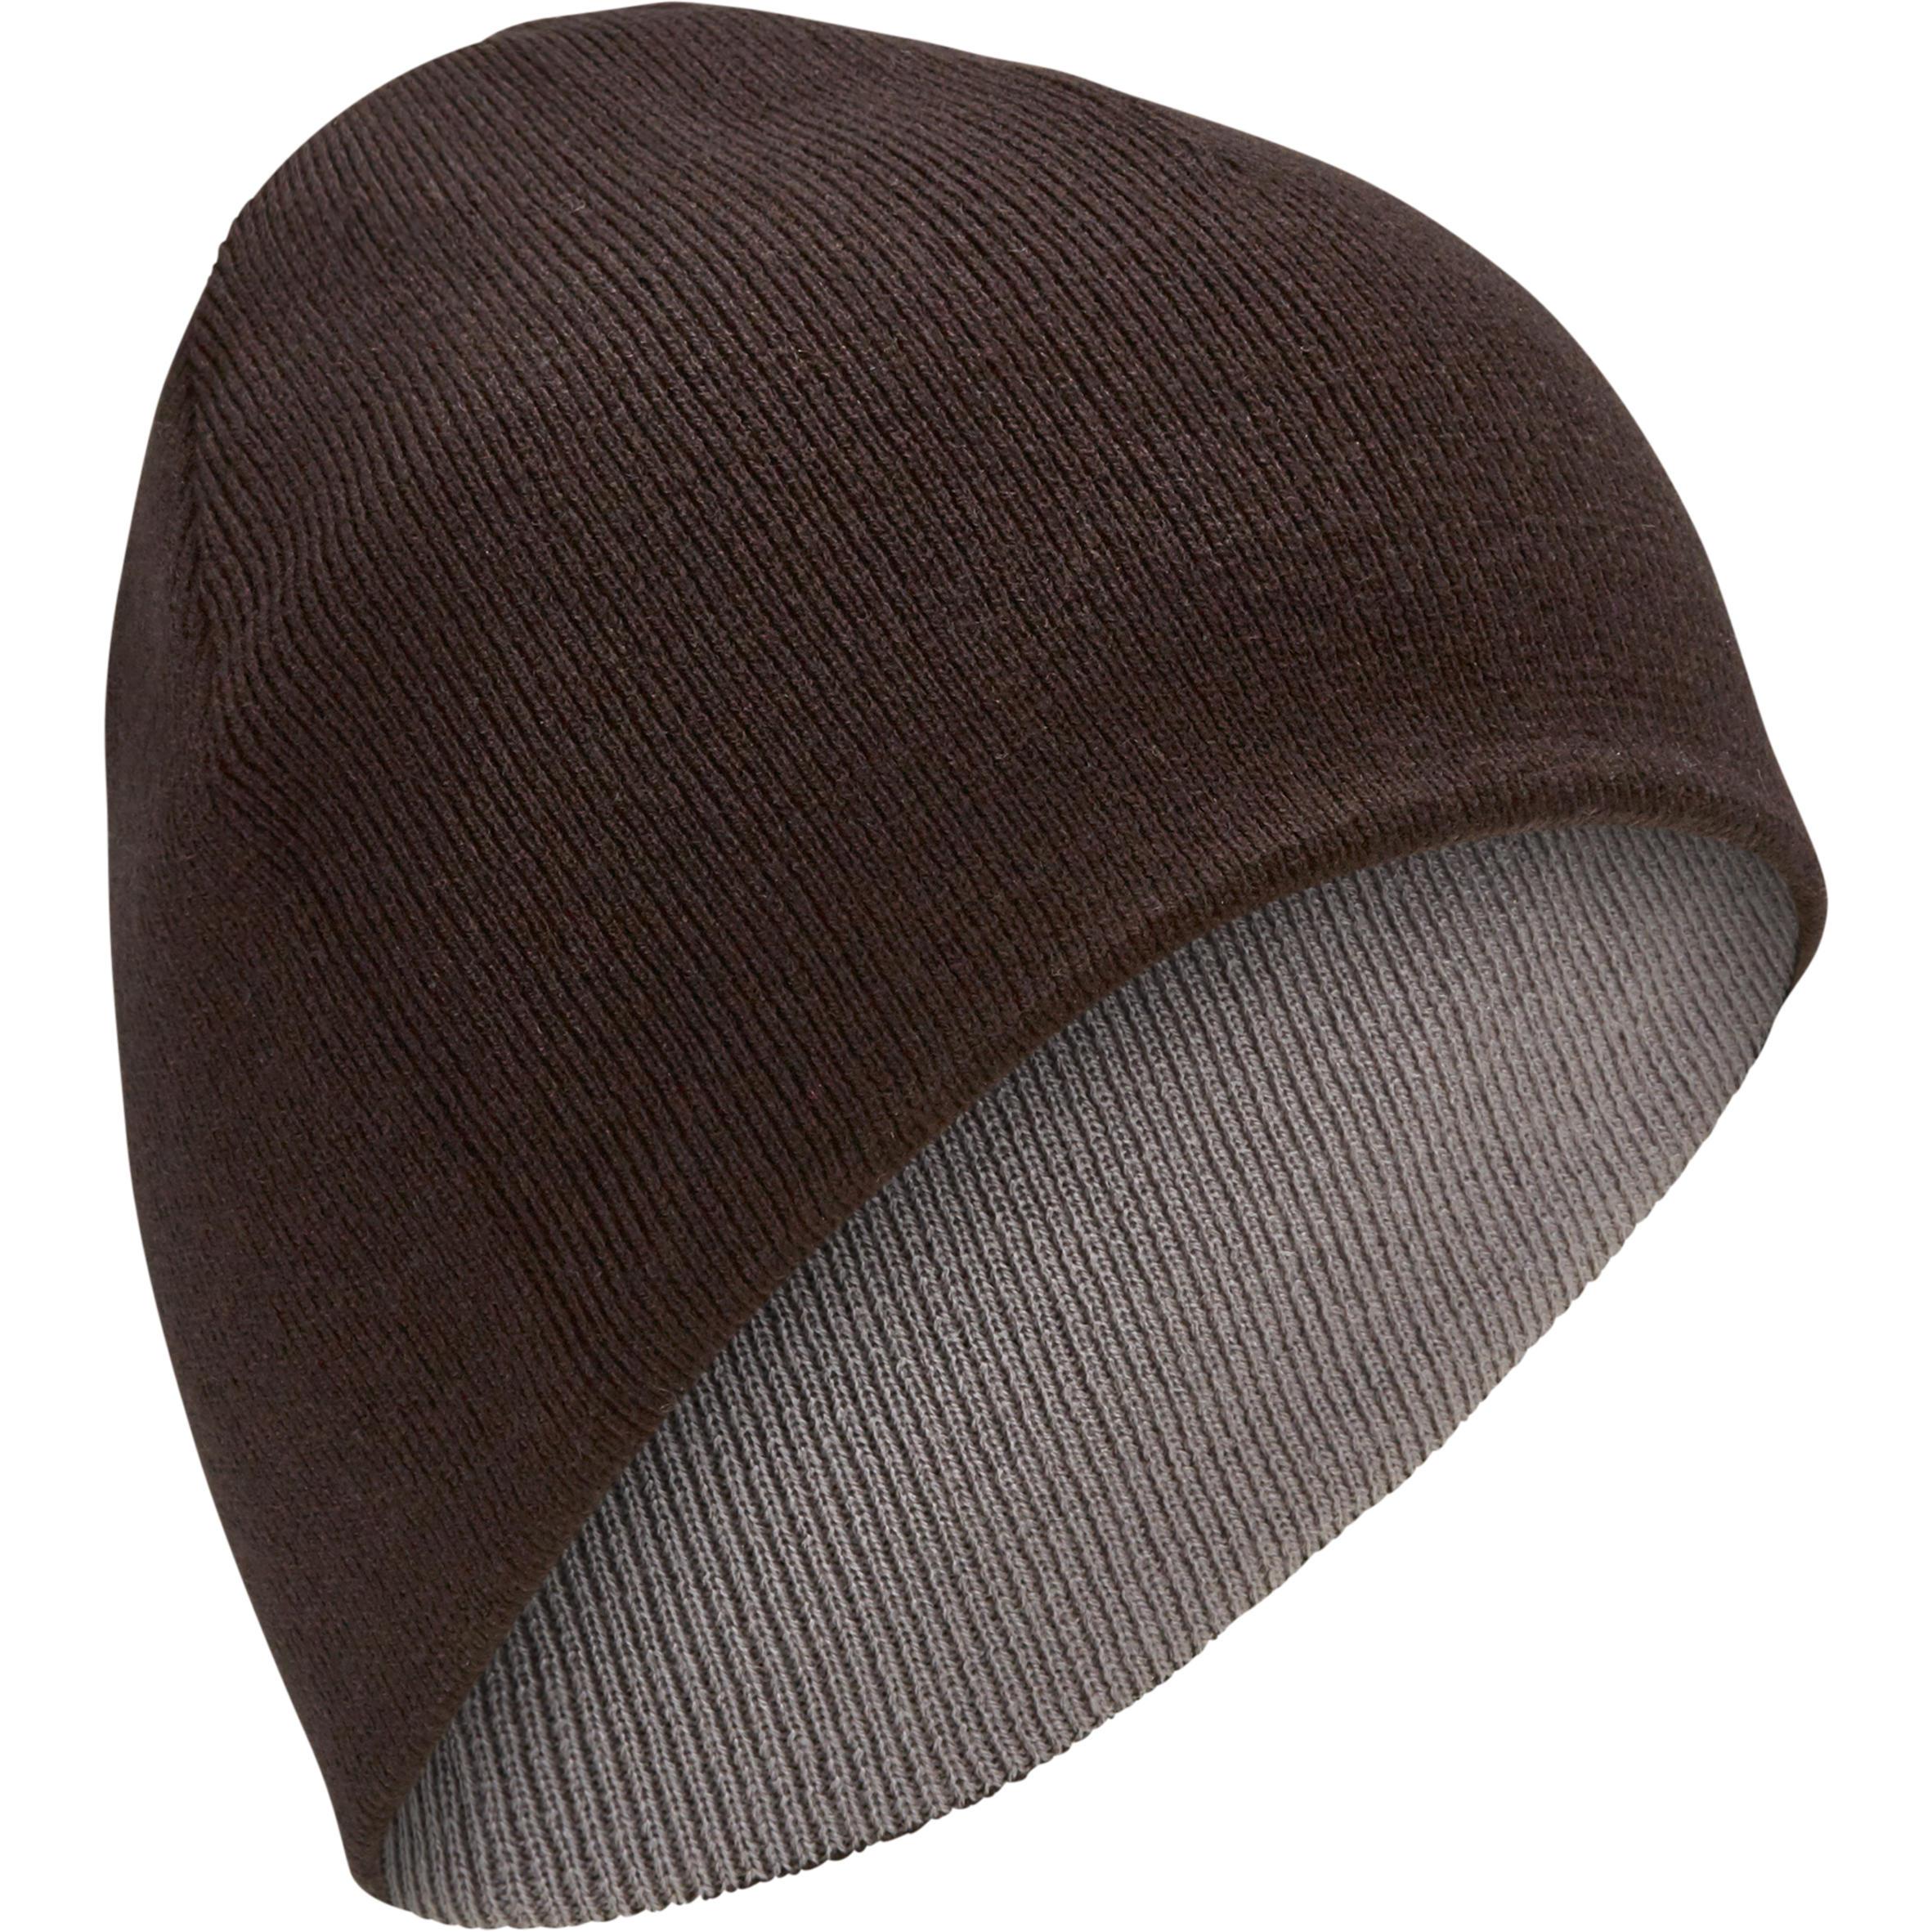 [ด่วน!! โปรโมชั่นมีจำนวนจำกัด] หมวกสกีสำหรับผู้ใหญ่แบบใส่ได้สองด้าน (สีดำ/เทา) สำหรับ สกี สโนว์บอร์ด เลื่อน